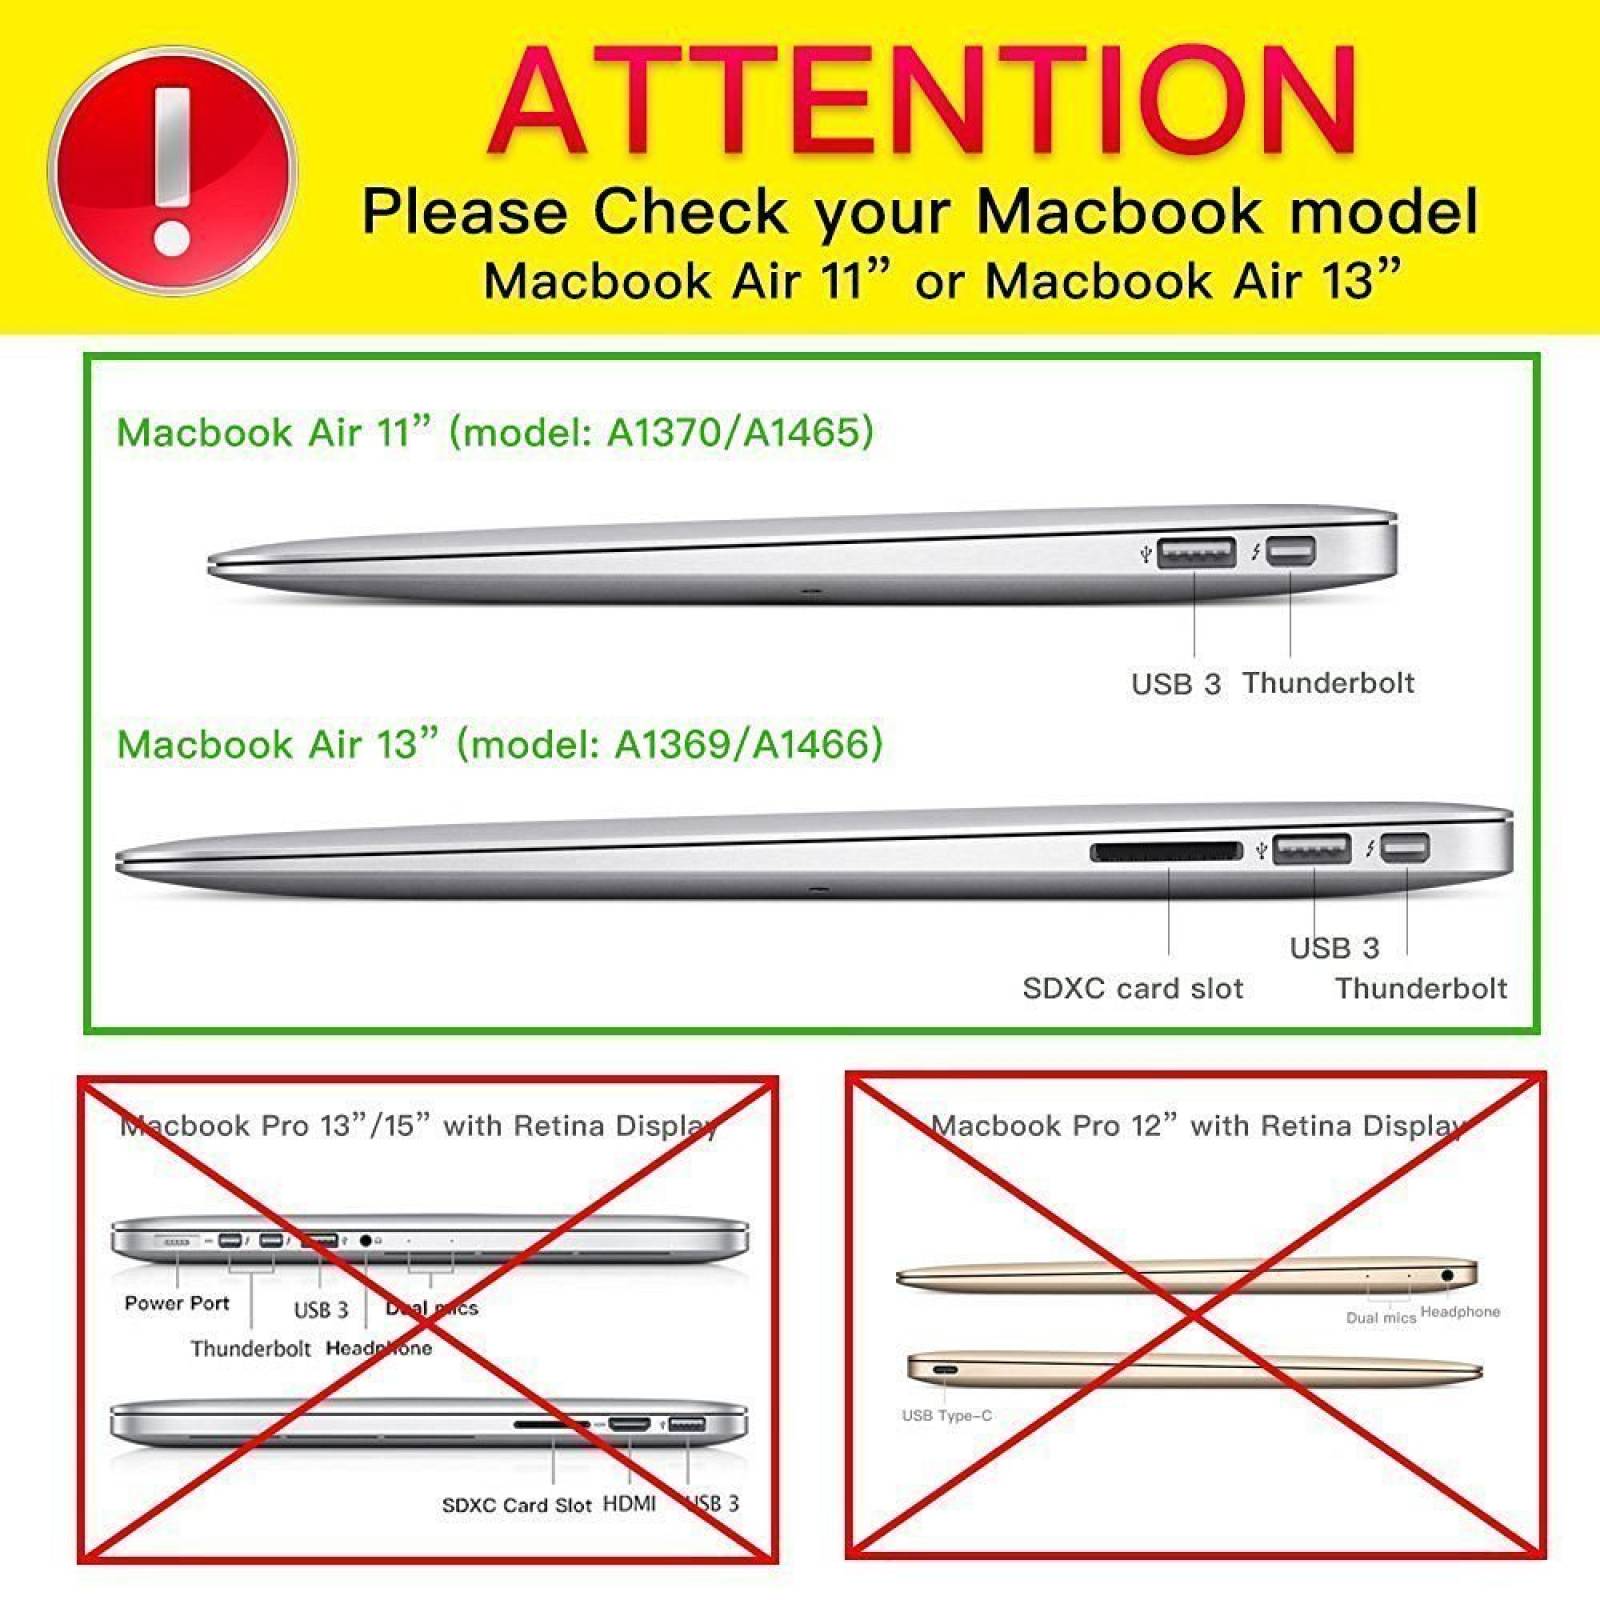 Kit Carcasa Ibenzer P/ Macbook Air 13 A1369 1466 -verde